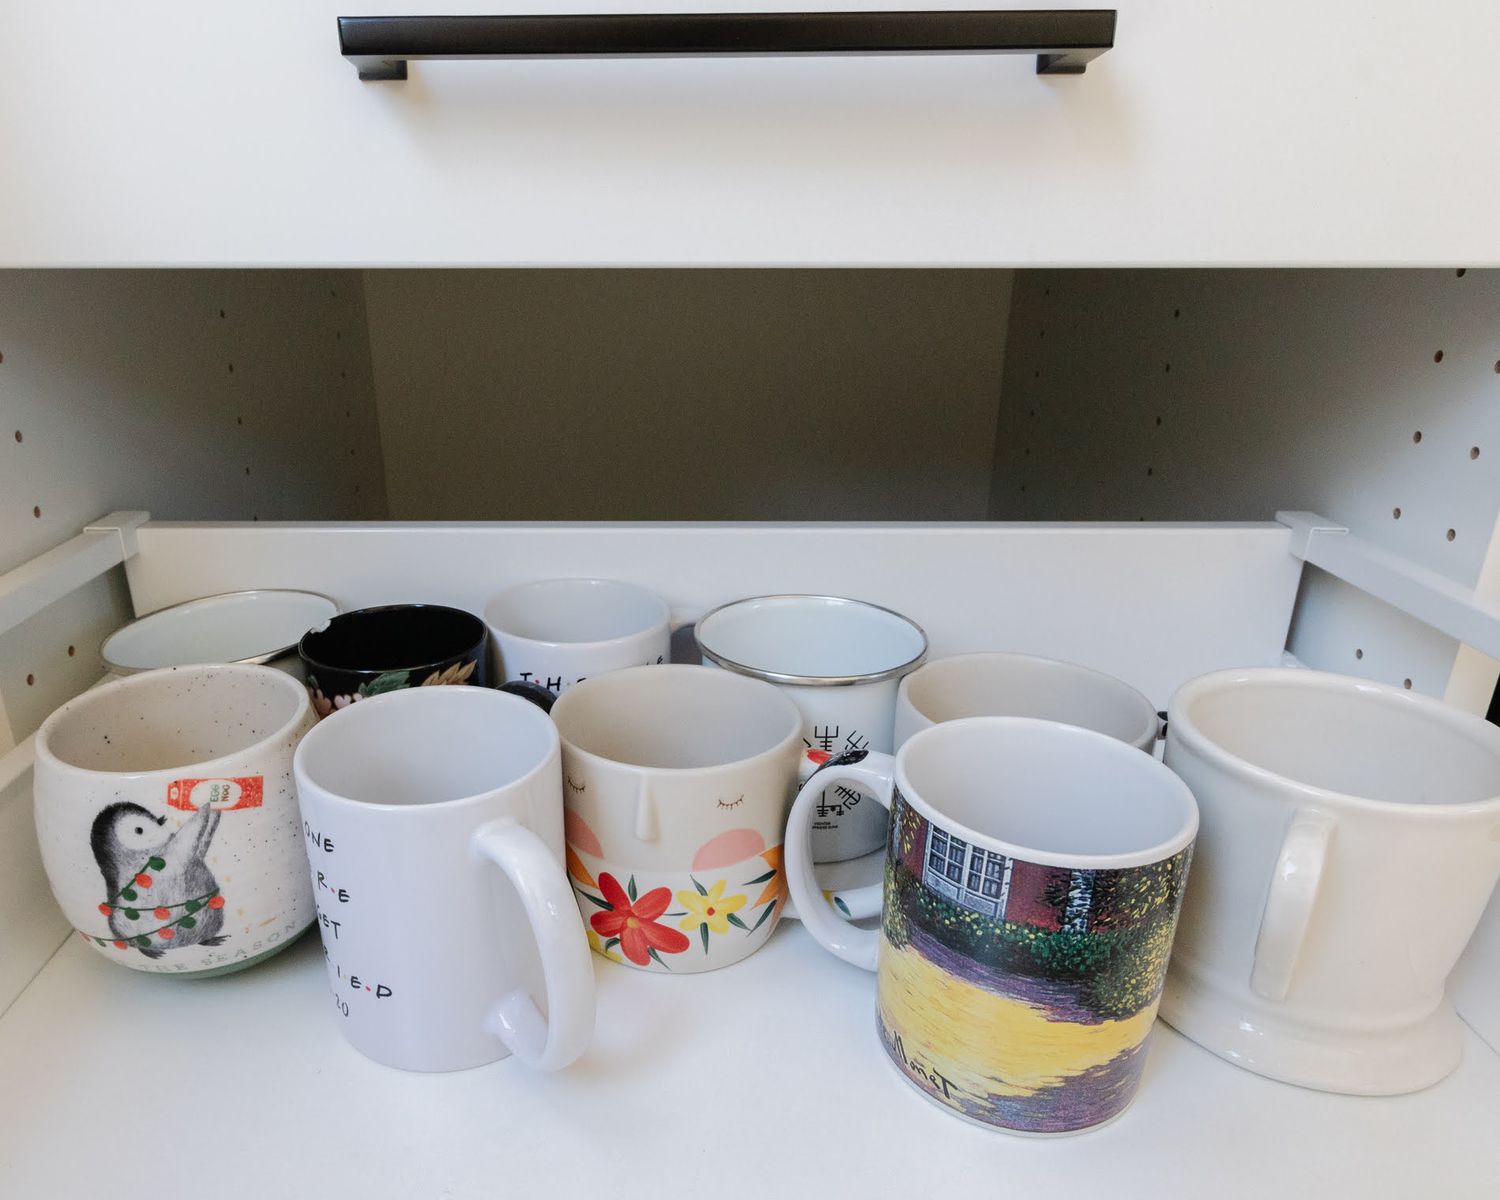 multiple coffee mugs